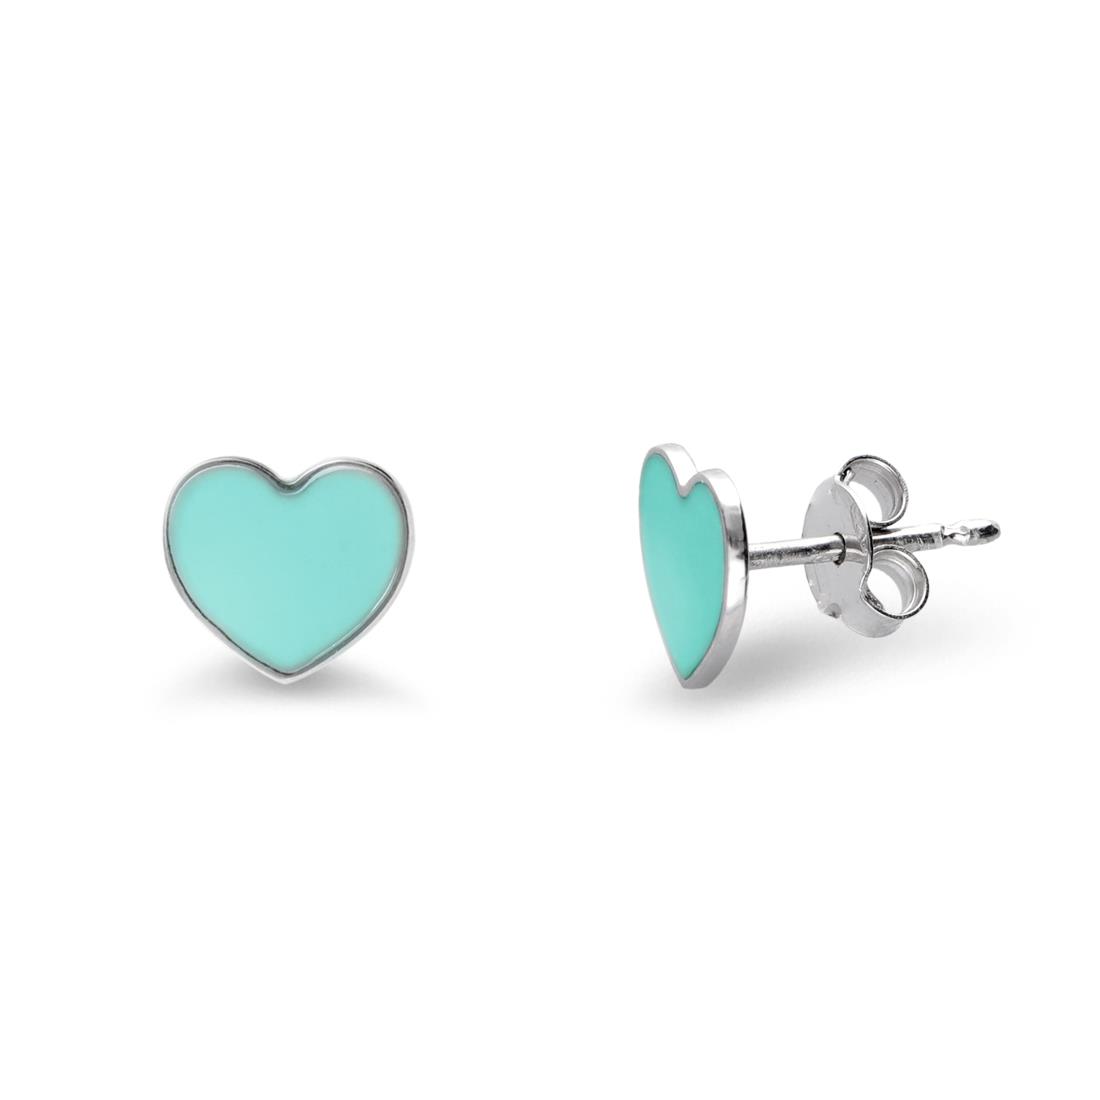 Silver earrings with turquoise heart - ALFIERI & ST. JOHN 925